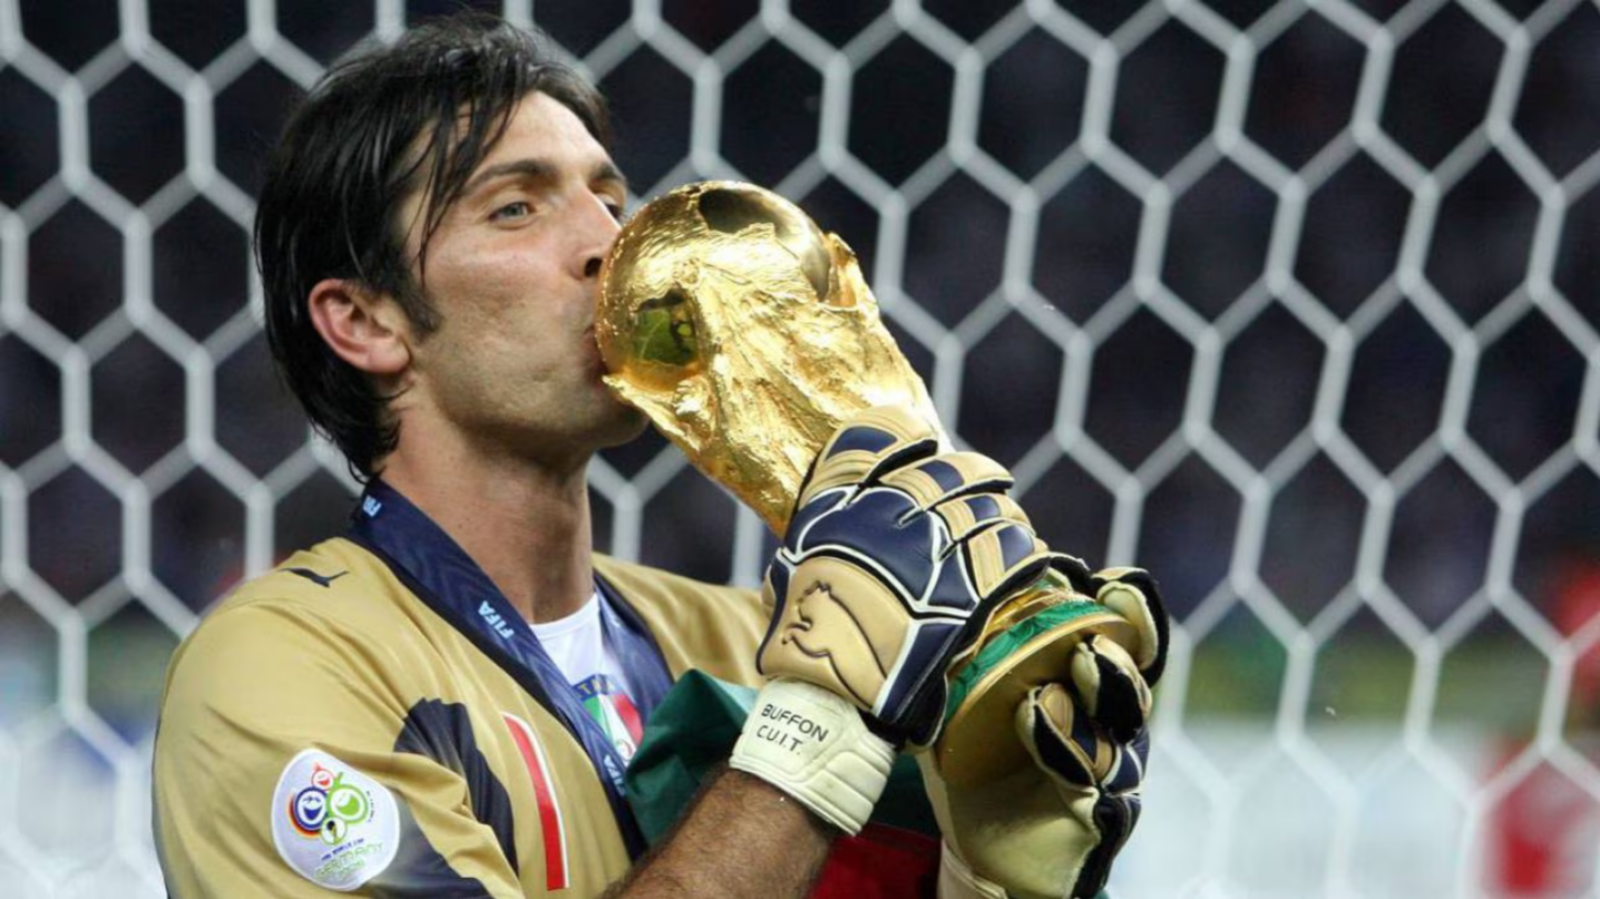 Imagen Buffon campeón del mundo en 2006. Foto AFP.